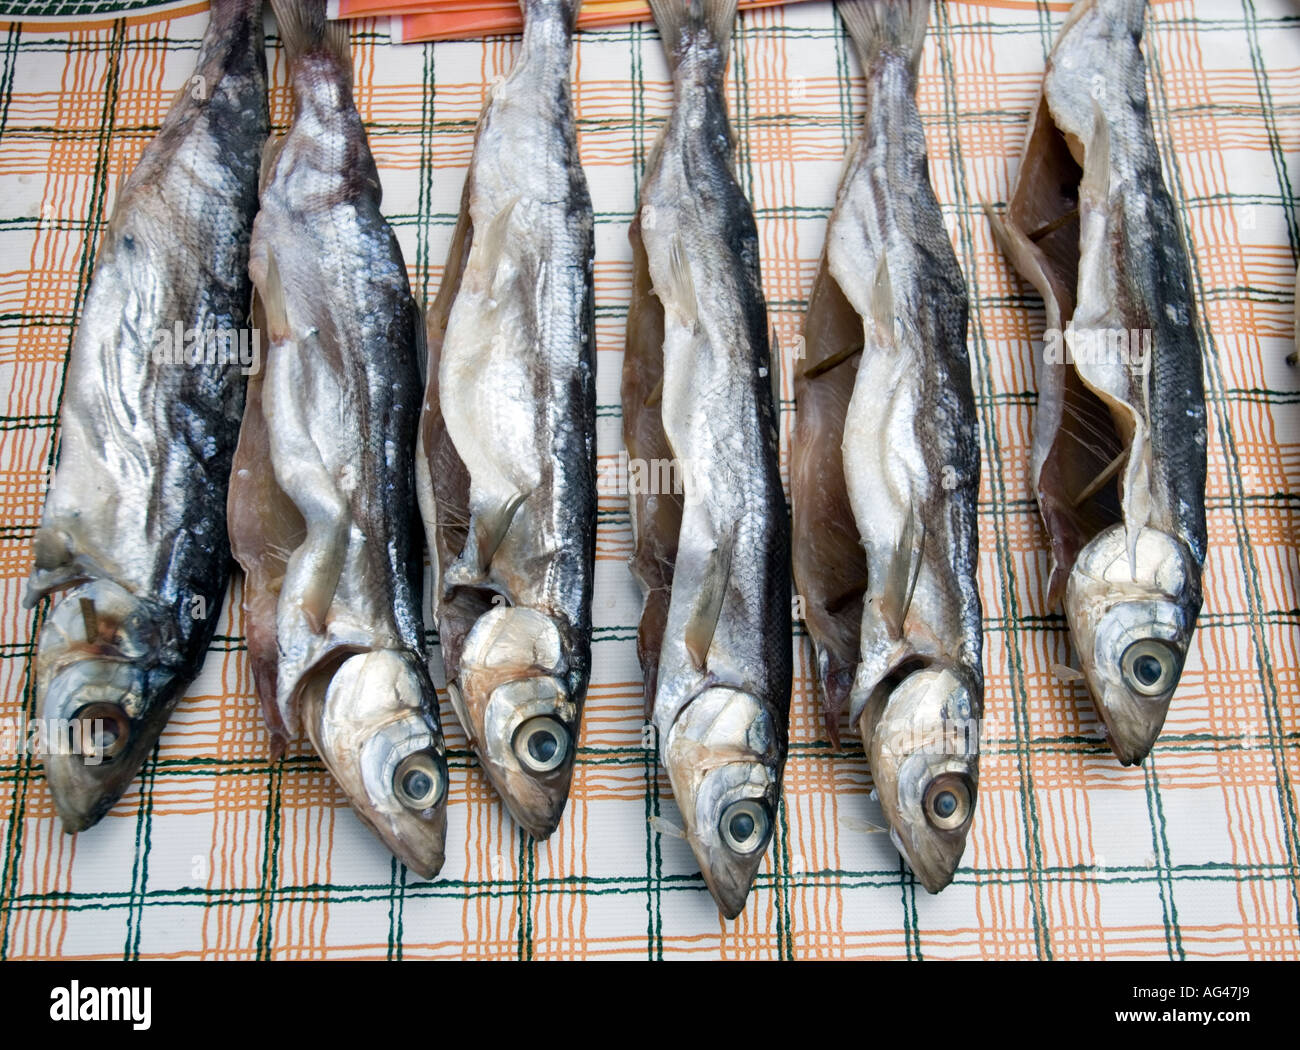 La vente de poisson Omul fumé sur les rives du lac Baïkal en Sibérie Russie 2006 Banque D'Images